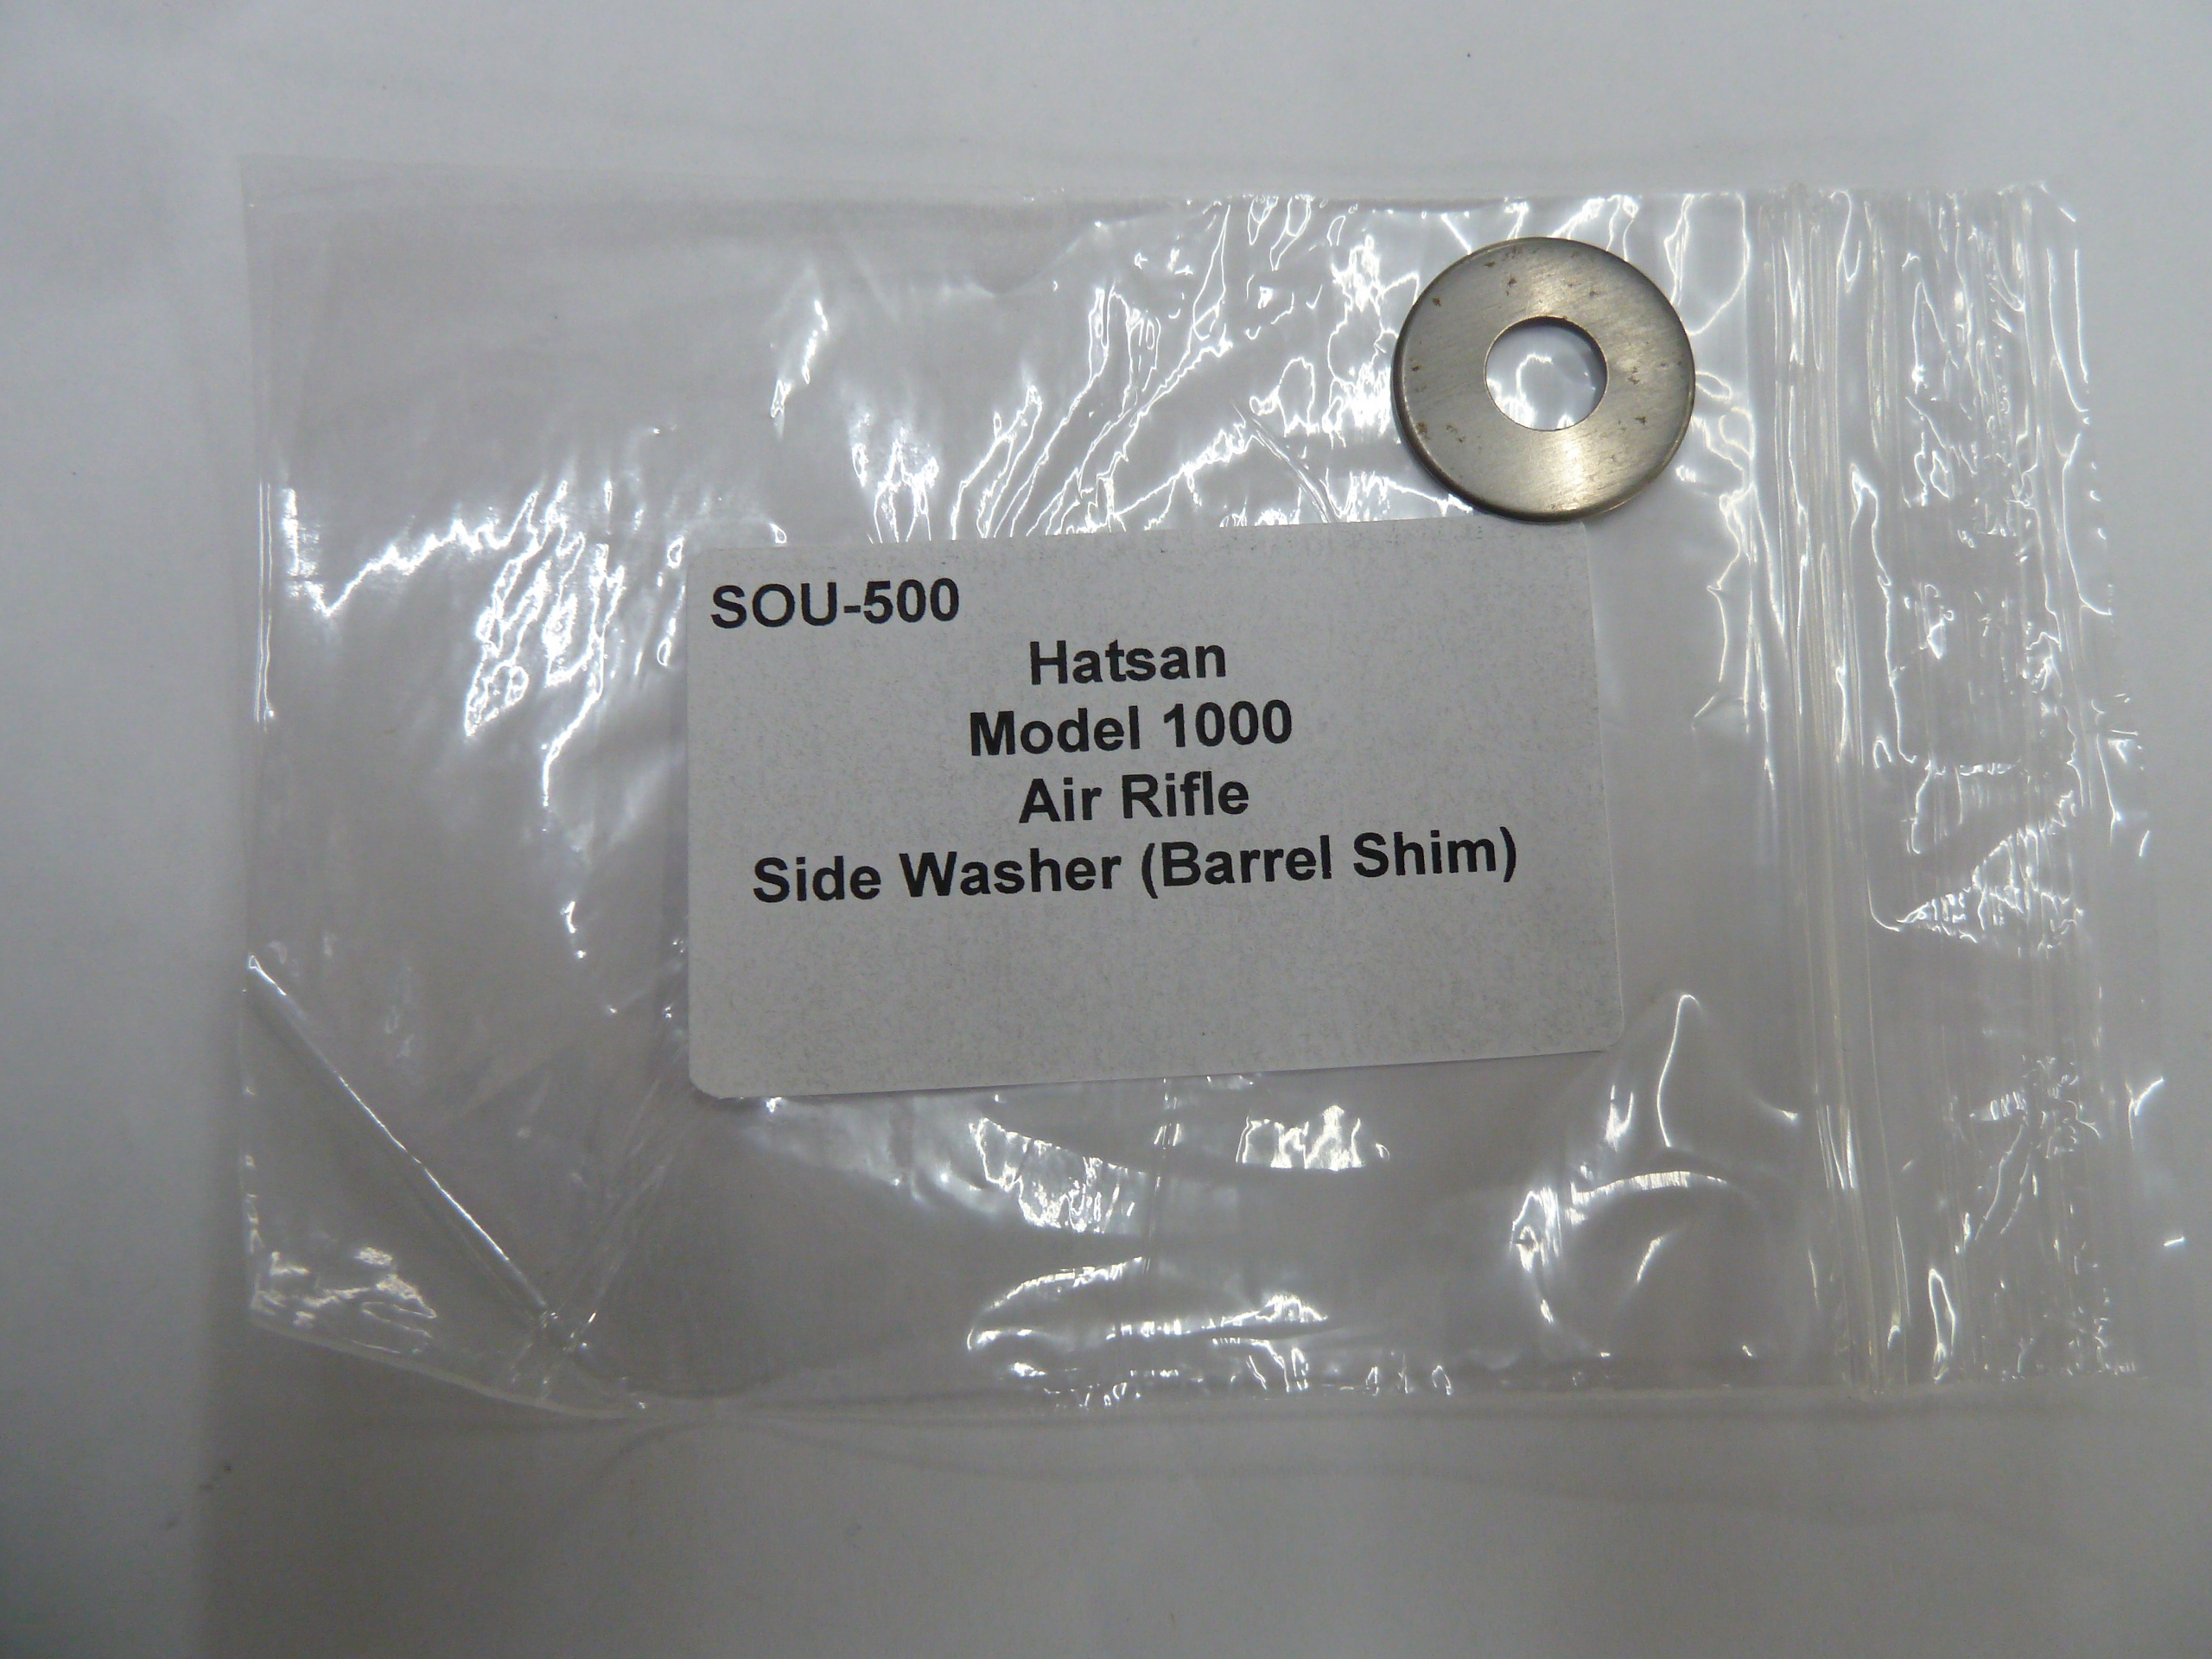 Hatsan 1000 Air Rifle side washer